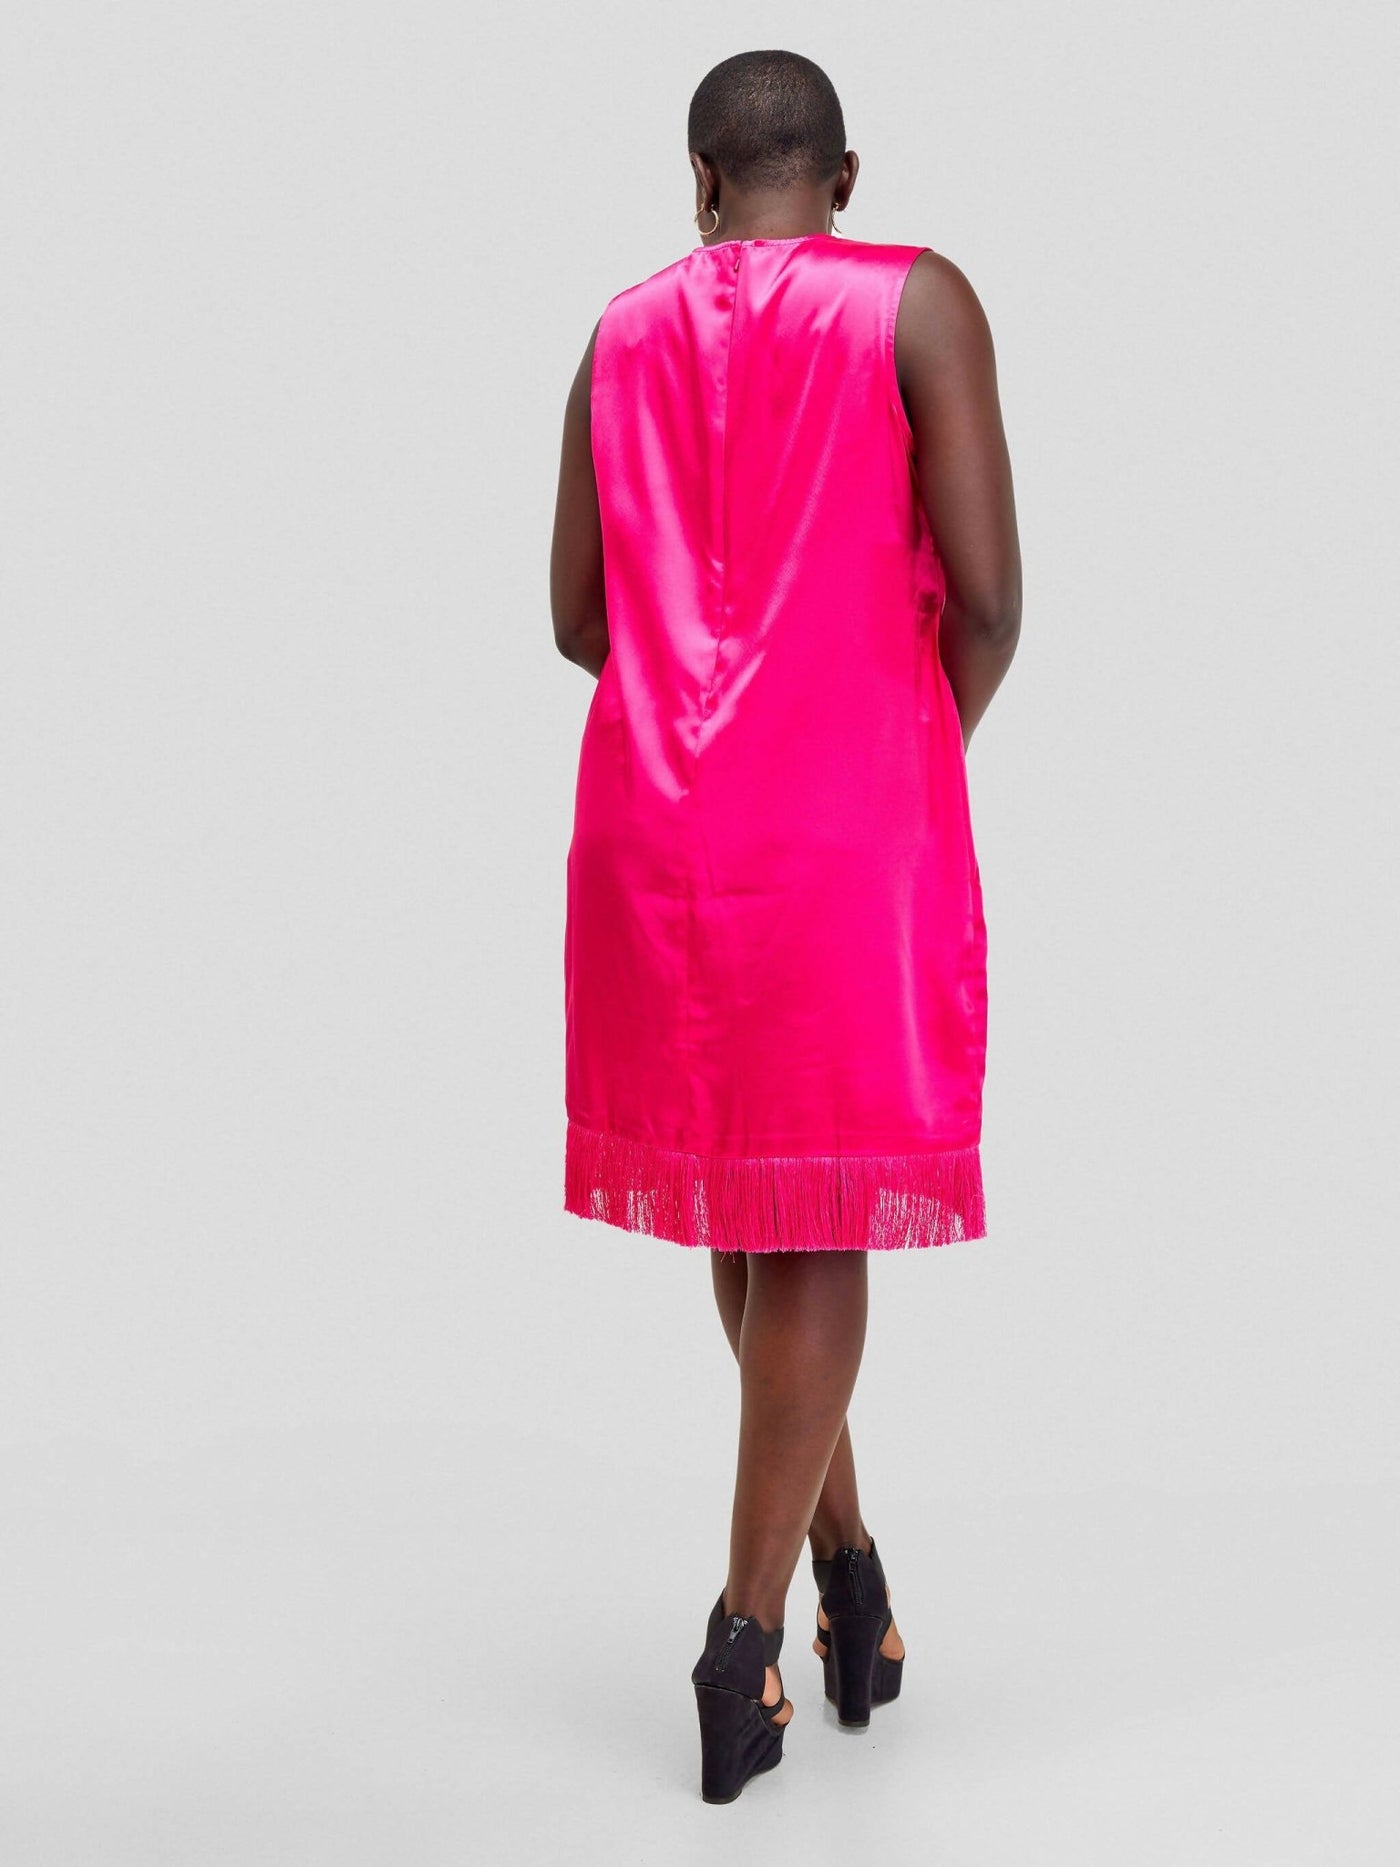 Fauza Design Tassel Dress - Fuschia - Shopzetu